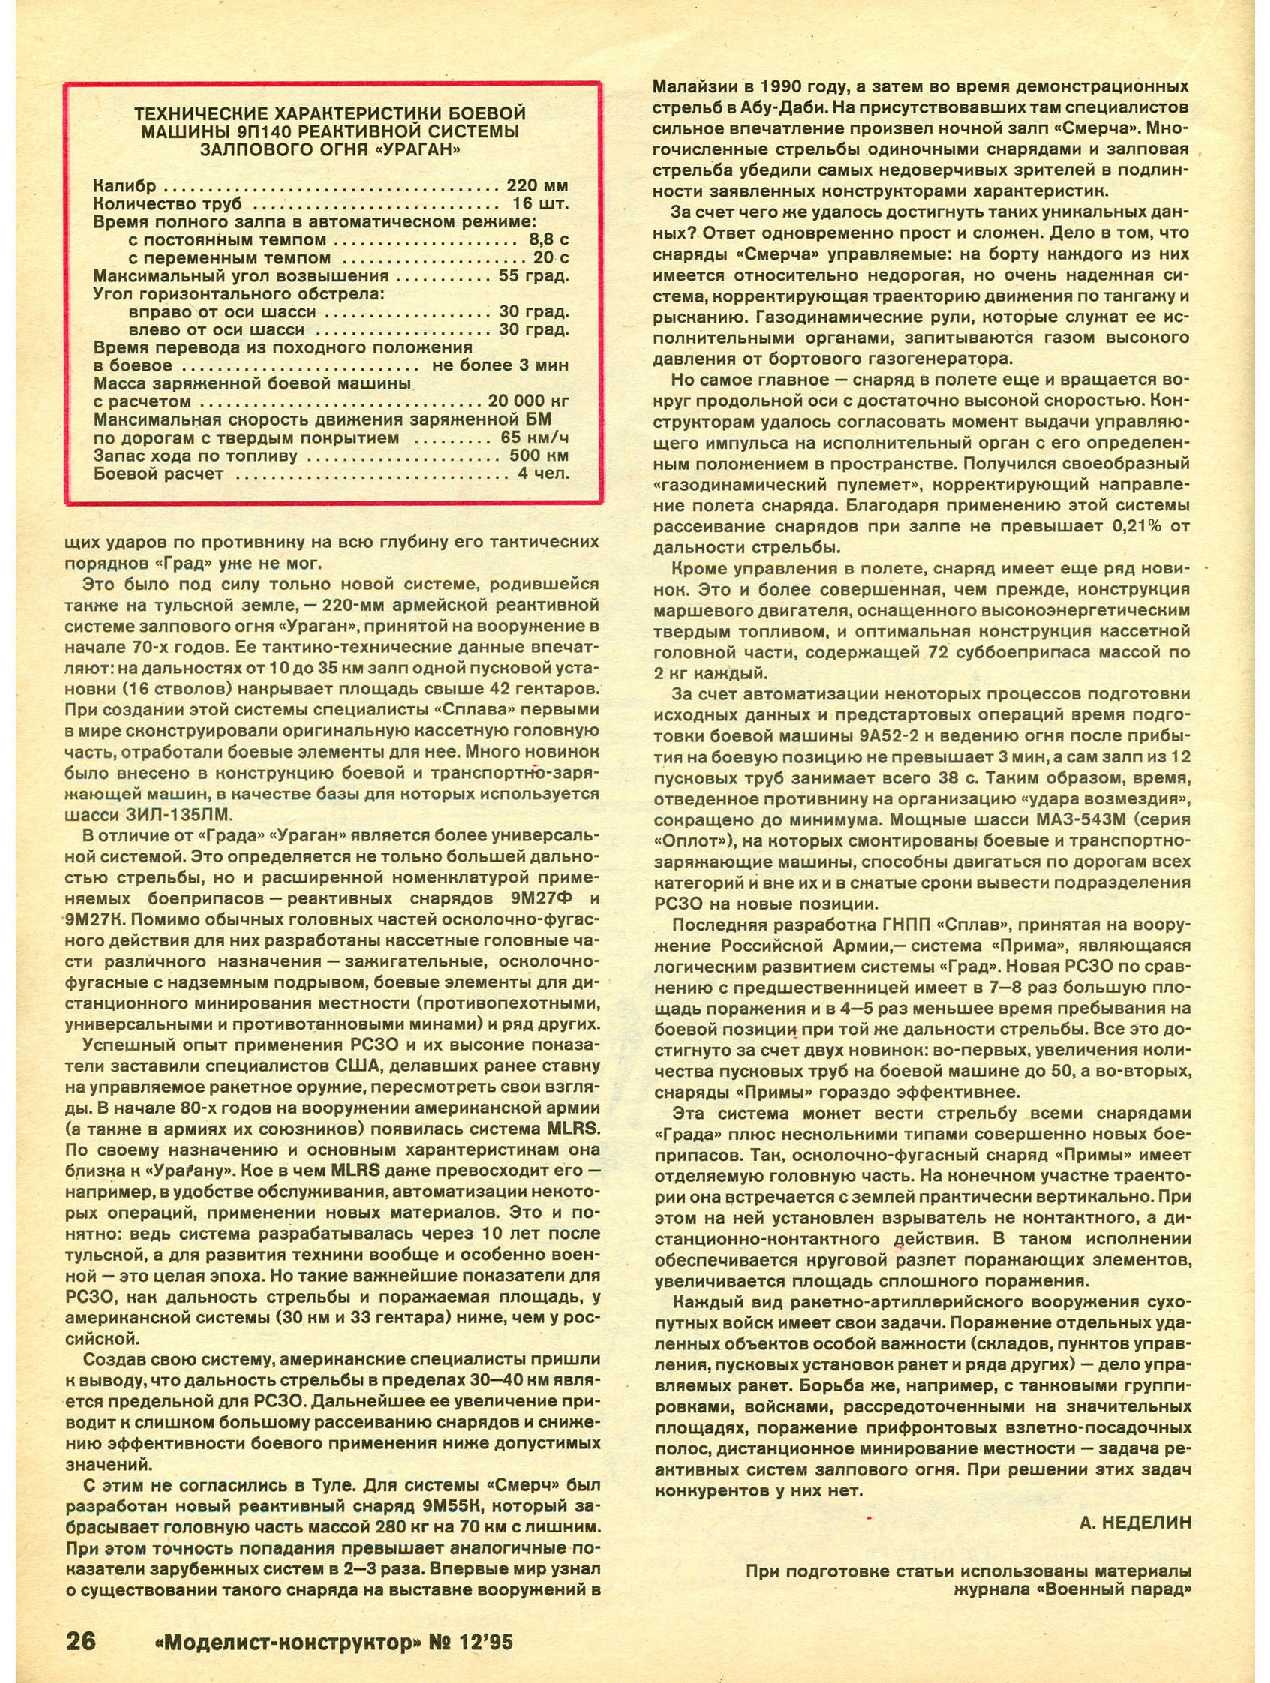 МК 12, 1995, 26 c.